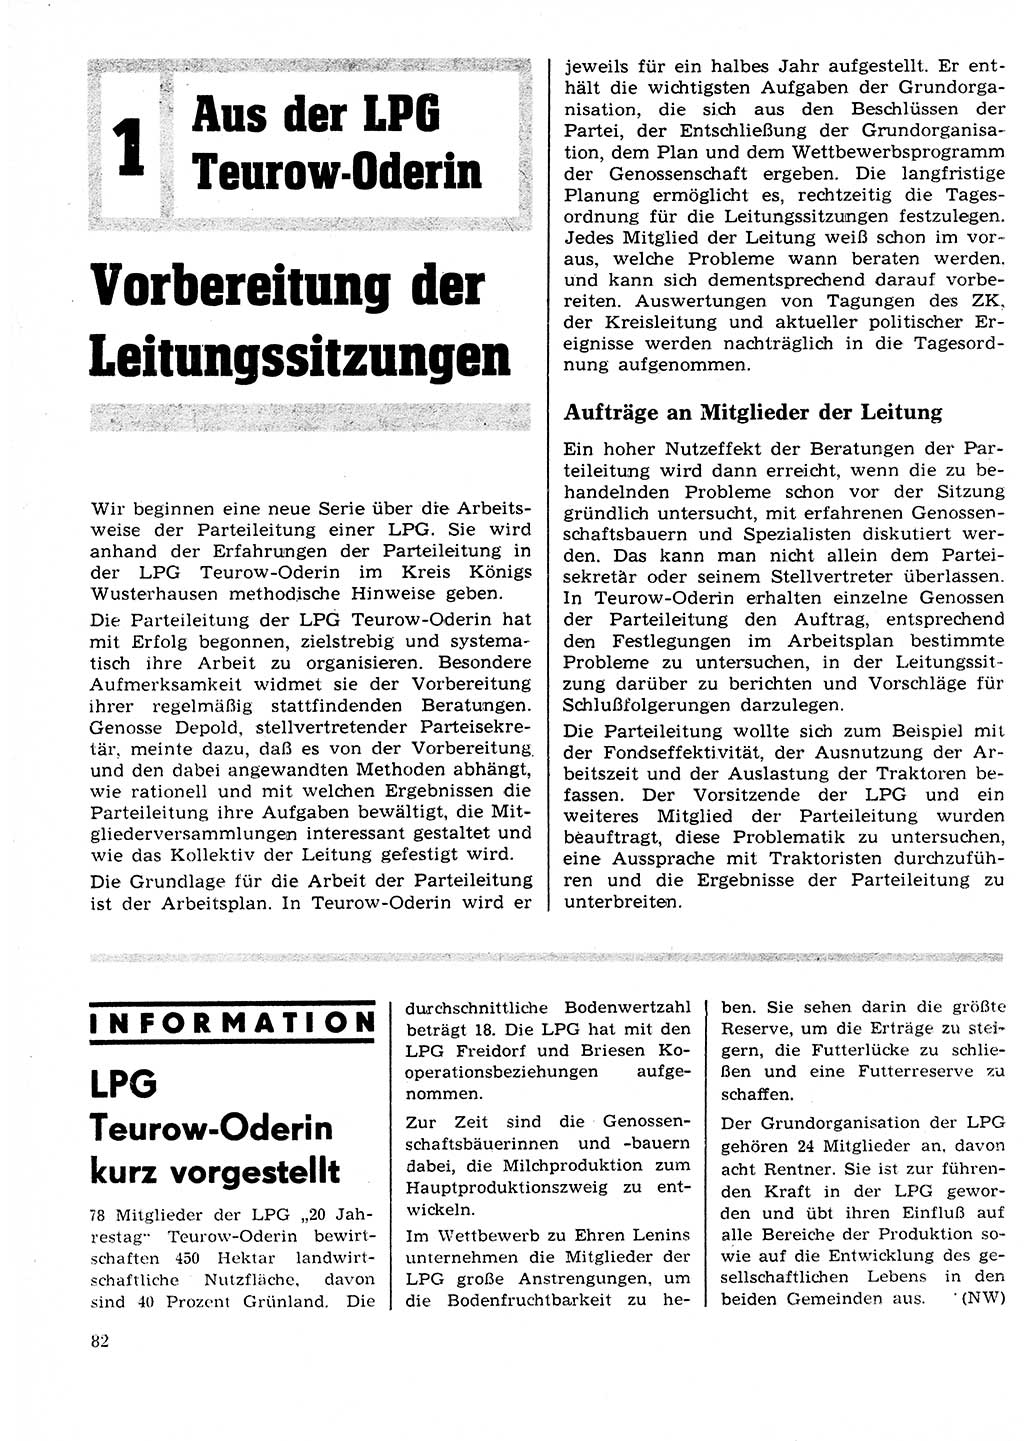 Neuer Weg (NW), Organ des Zentralkomitees (ZK) der SED (Sozialistische Einheitspartei Deutschlands) für Fragen des Parteilebens, 25. Jahrgang [Deutsche Demokratische Republik (DDR)] 1970, Seite 82 (NW ZK SED DDR 1970, S. 82)